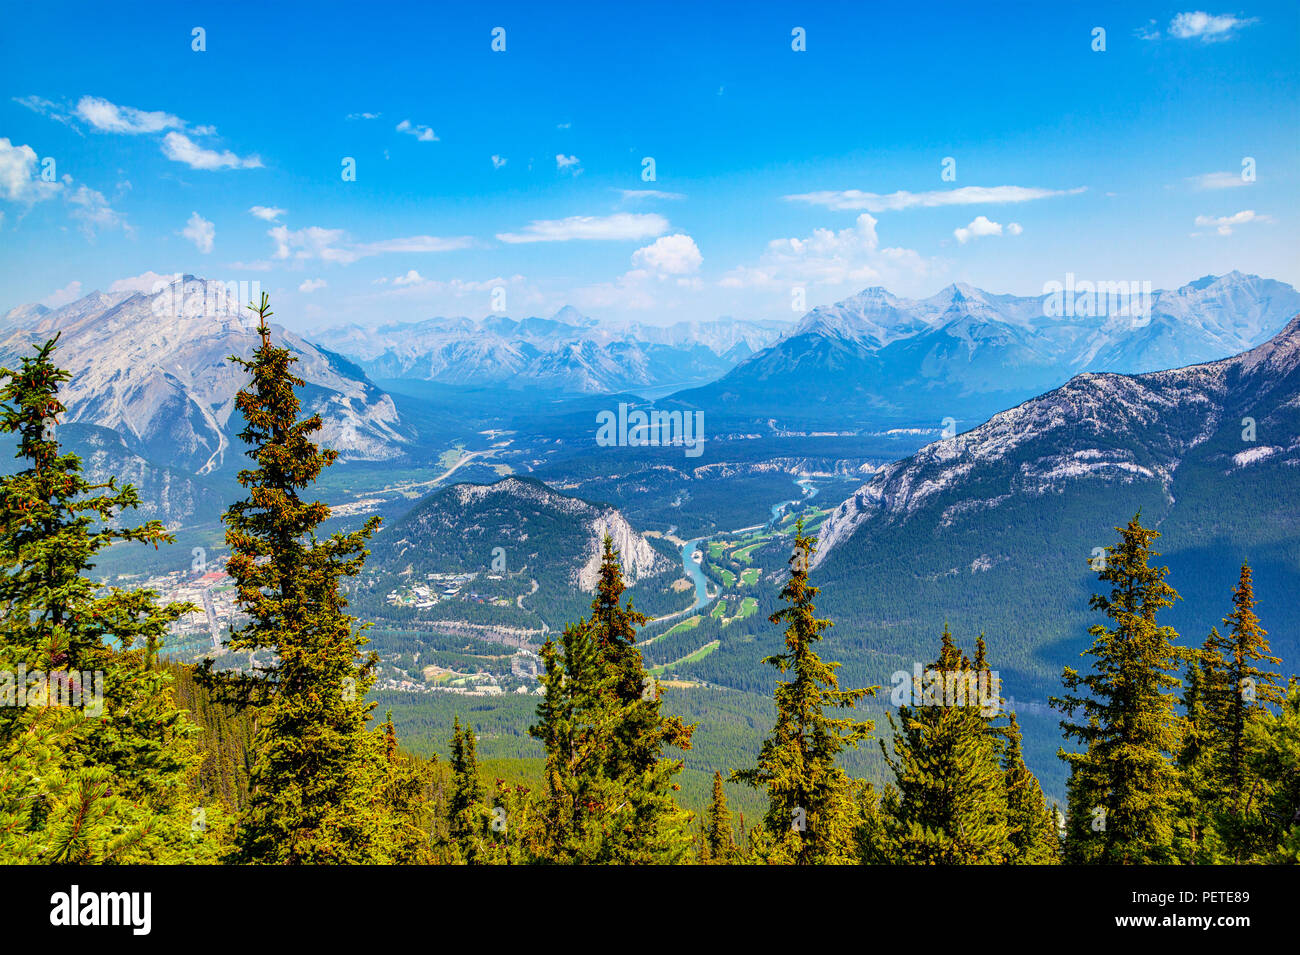 Chaînes de montagnes comme vue du mont Sulphur dans le parc national Banff, Alberta, Canada, montrant la ville de Banff, la rivière Bow et des sommets environnants. Banque D'Images